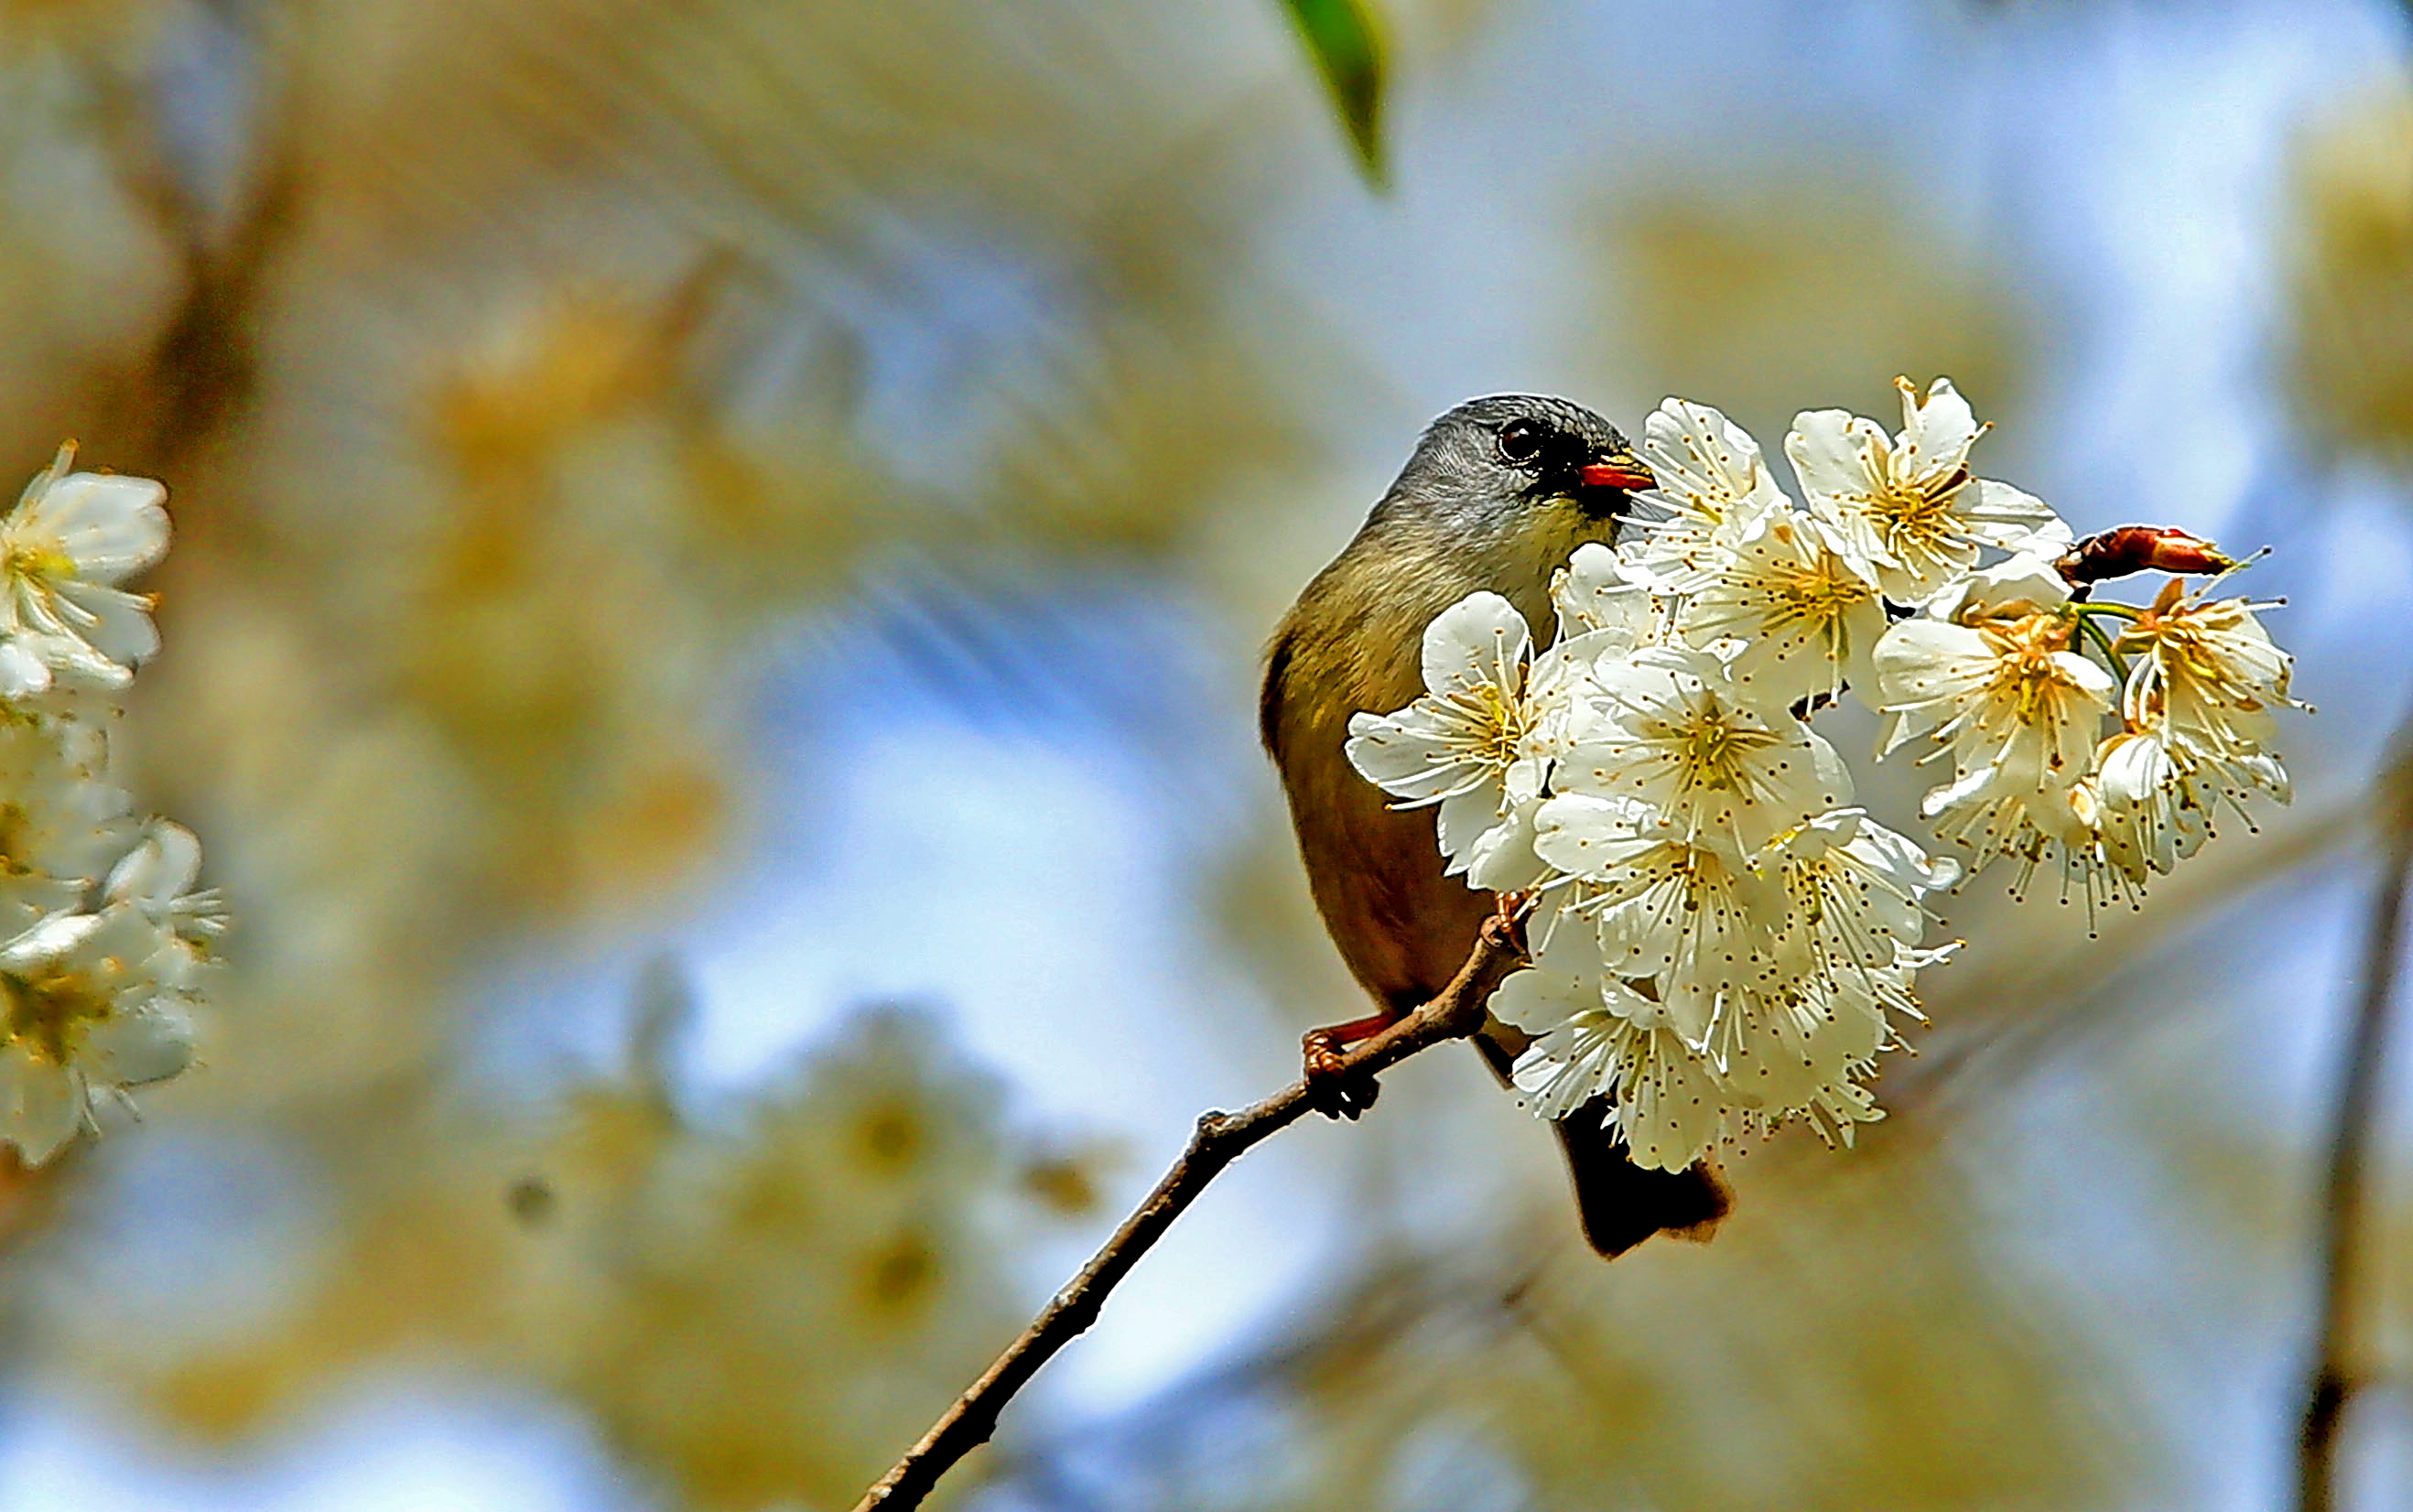 大自然鸟语花香 花朵图片